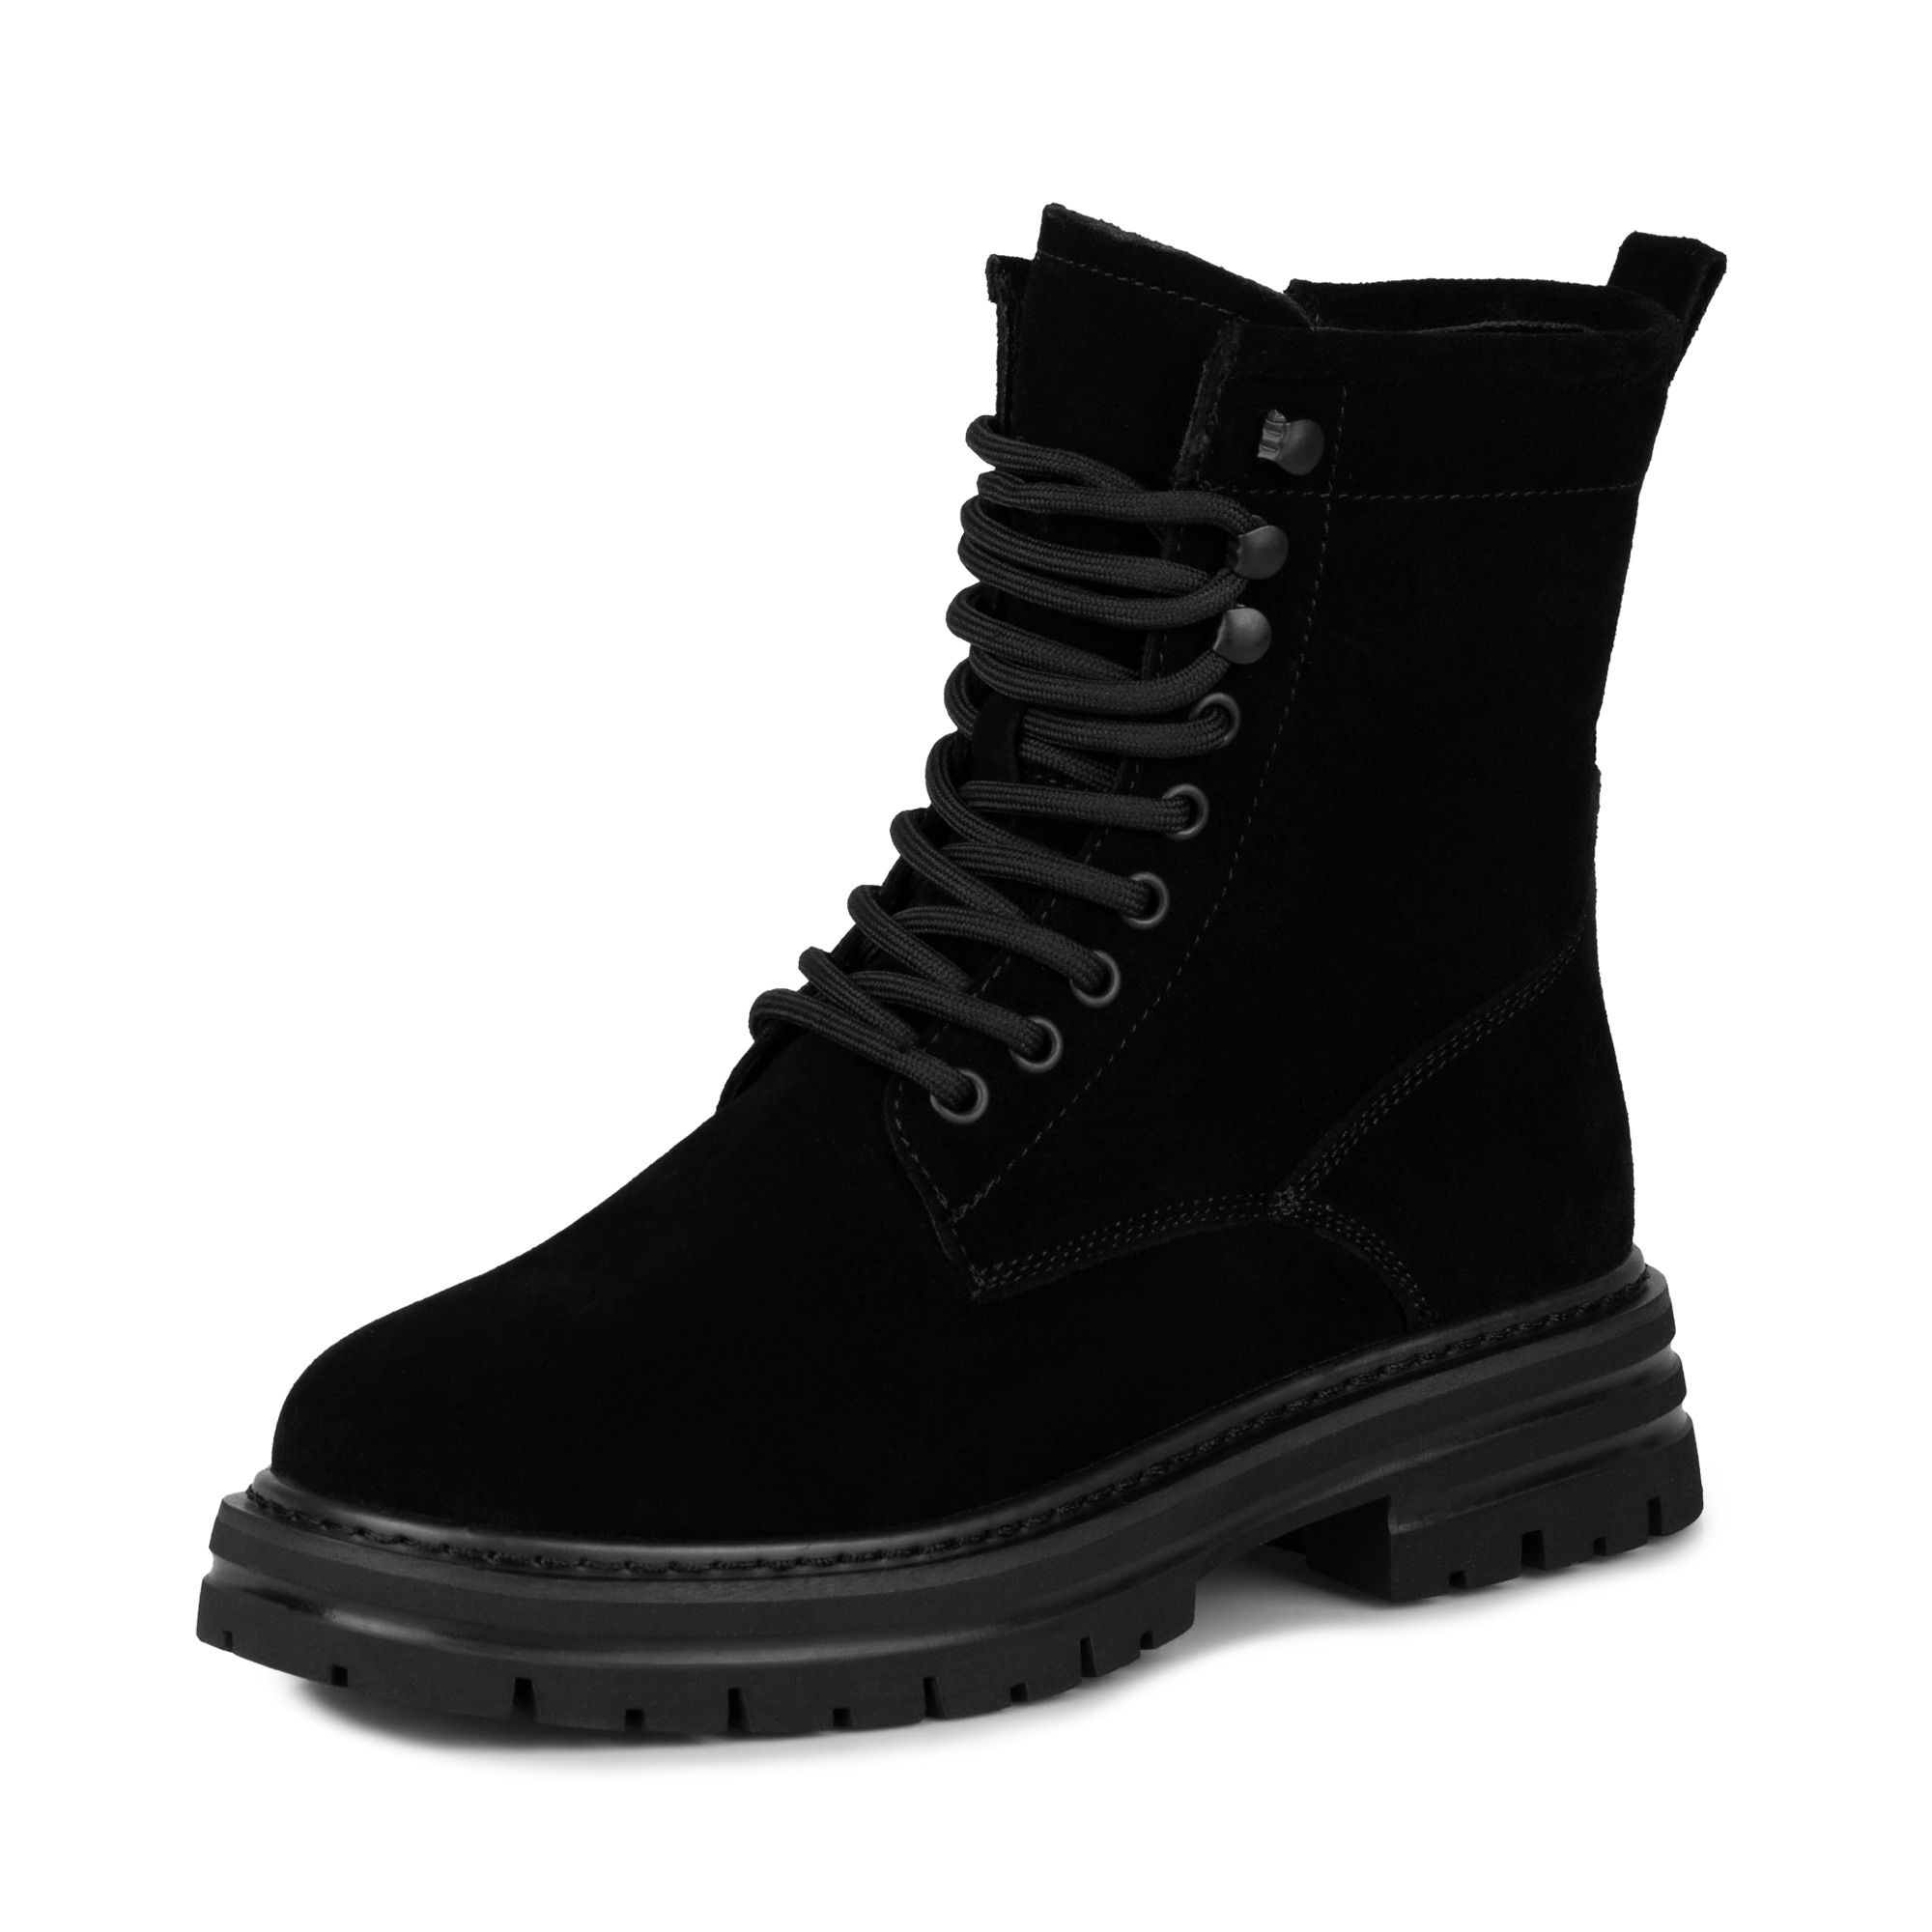 Ботинки Thomas Munz 200-3406A-50202, цвет черный, размер 38 - фото 2